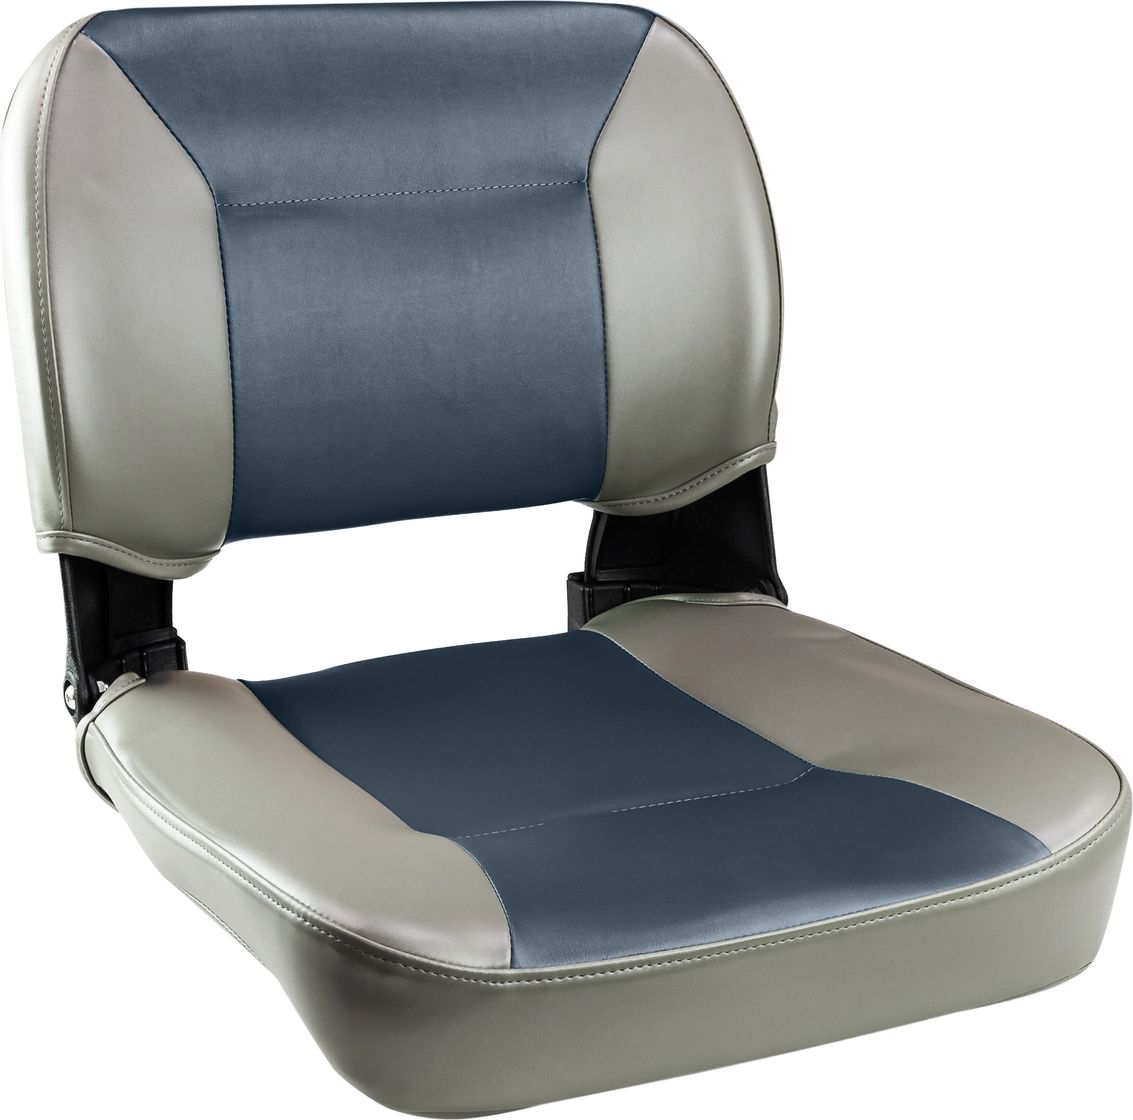 Кресло складное, цвет серый/темно-серый C12510GG кресло складное premium серый темно серый 106202501